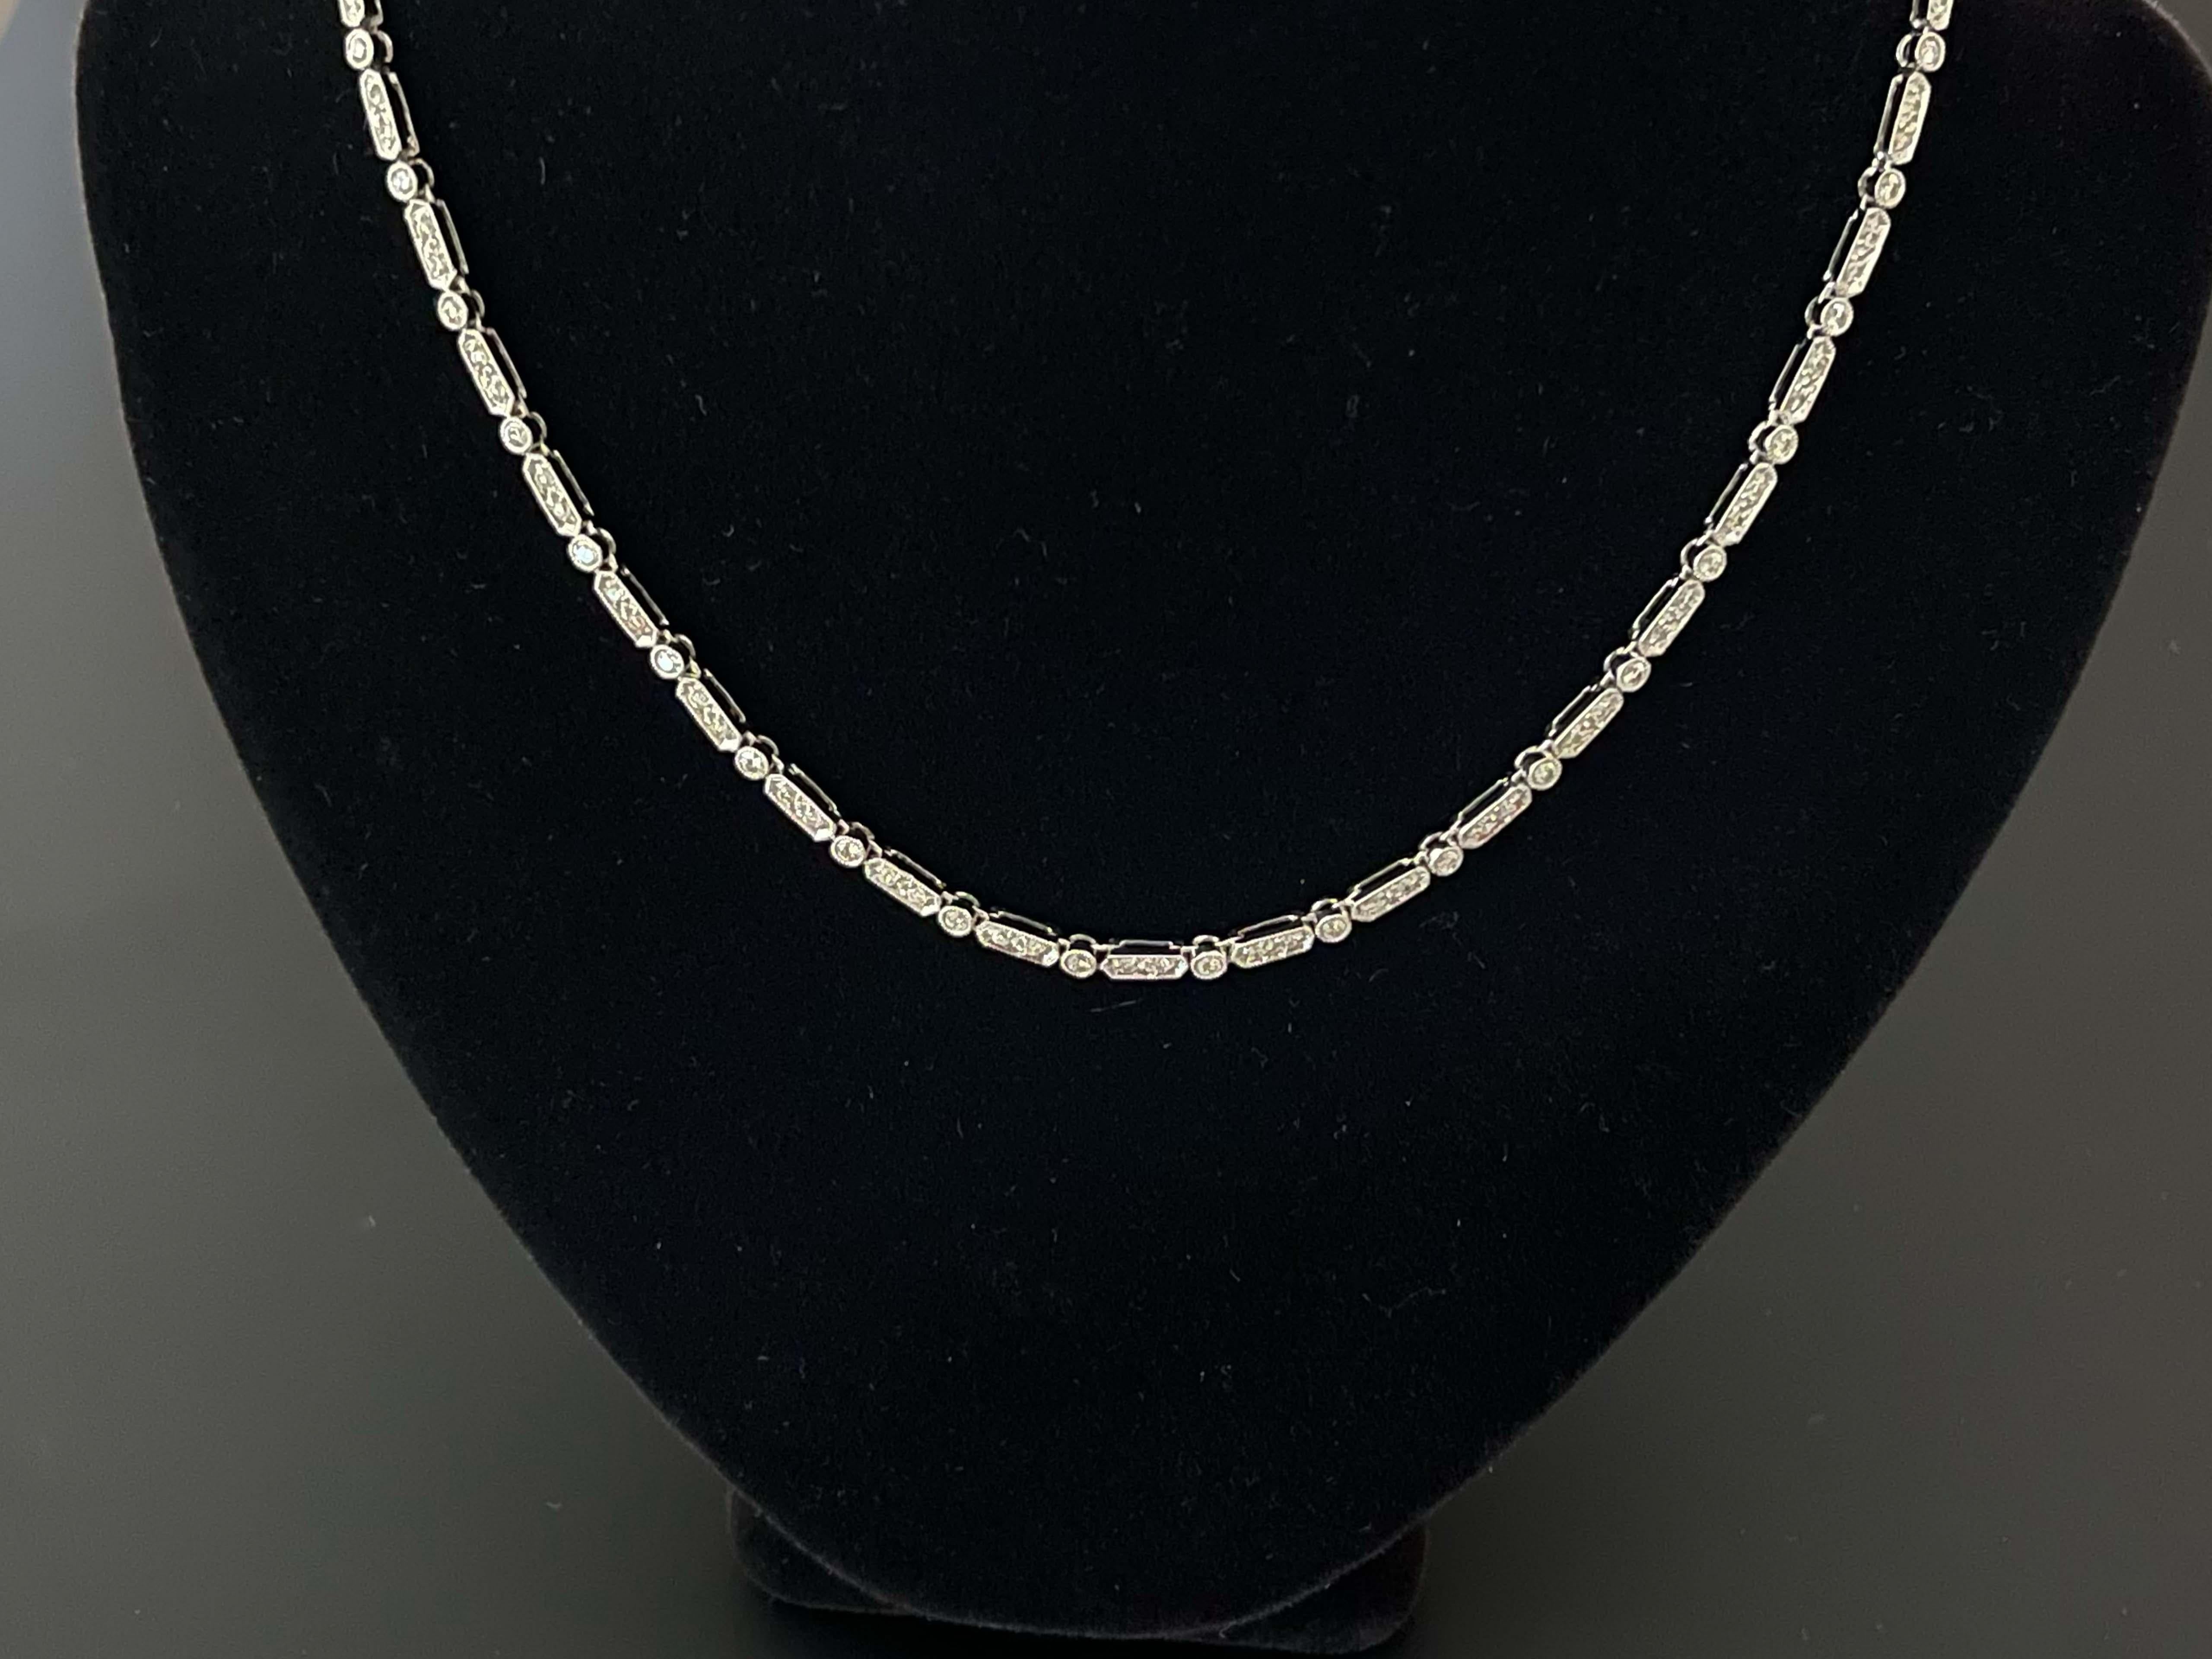 petite diamond tennis necklace